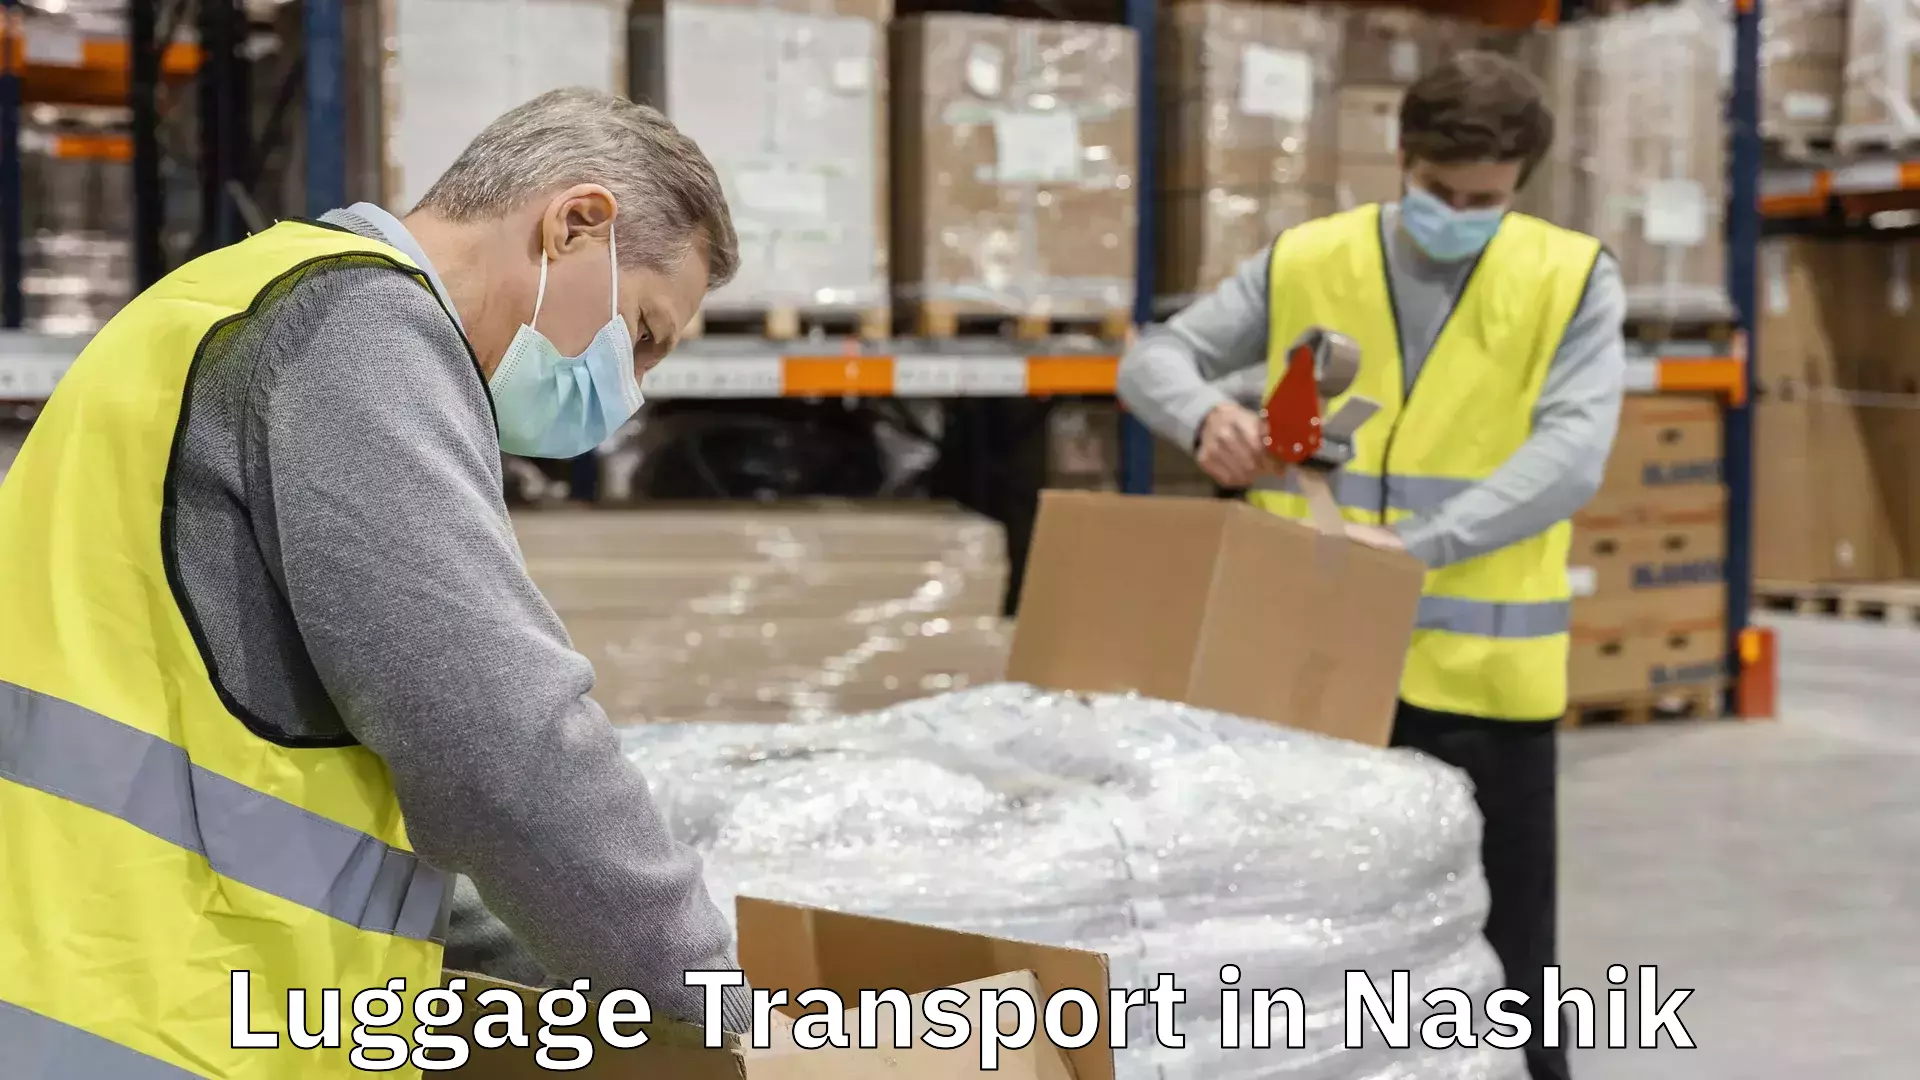 Baggage transport management in Nashik